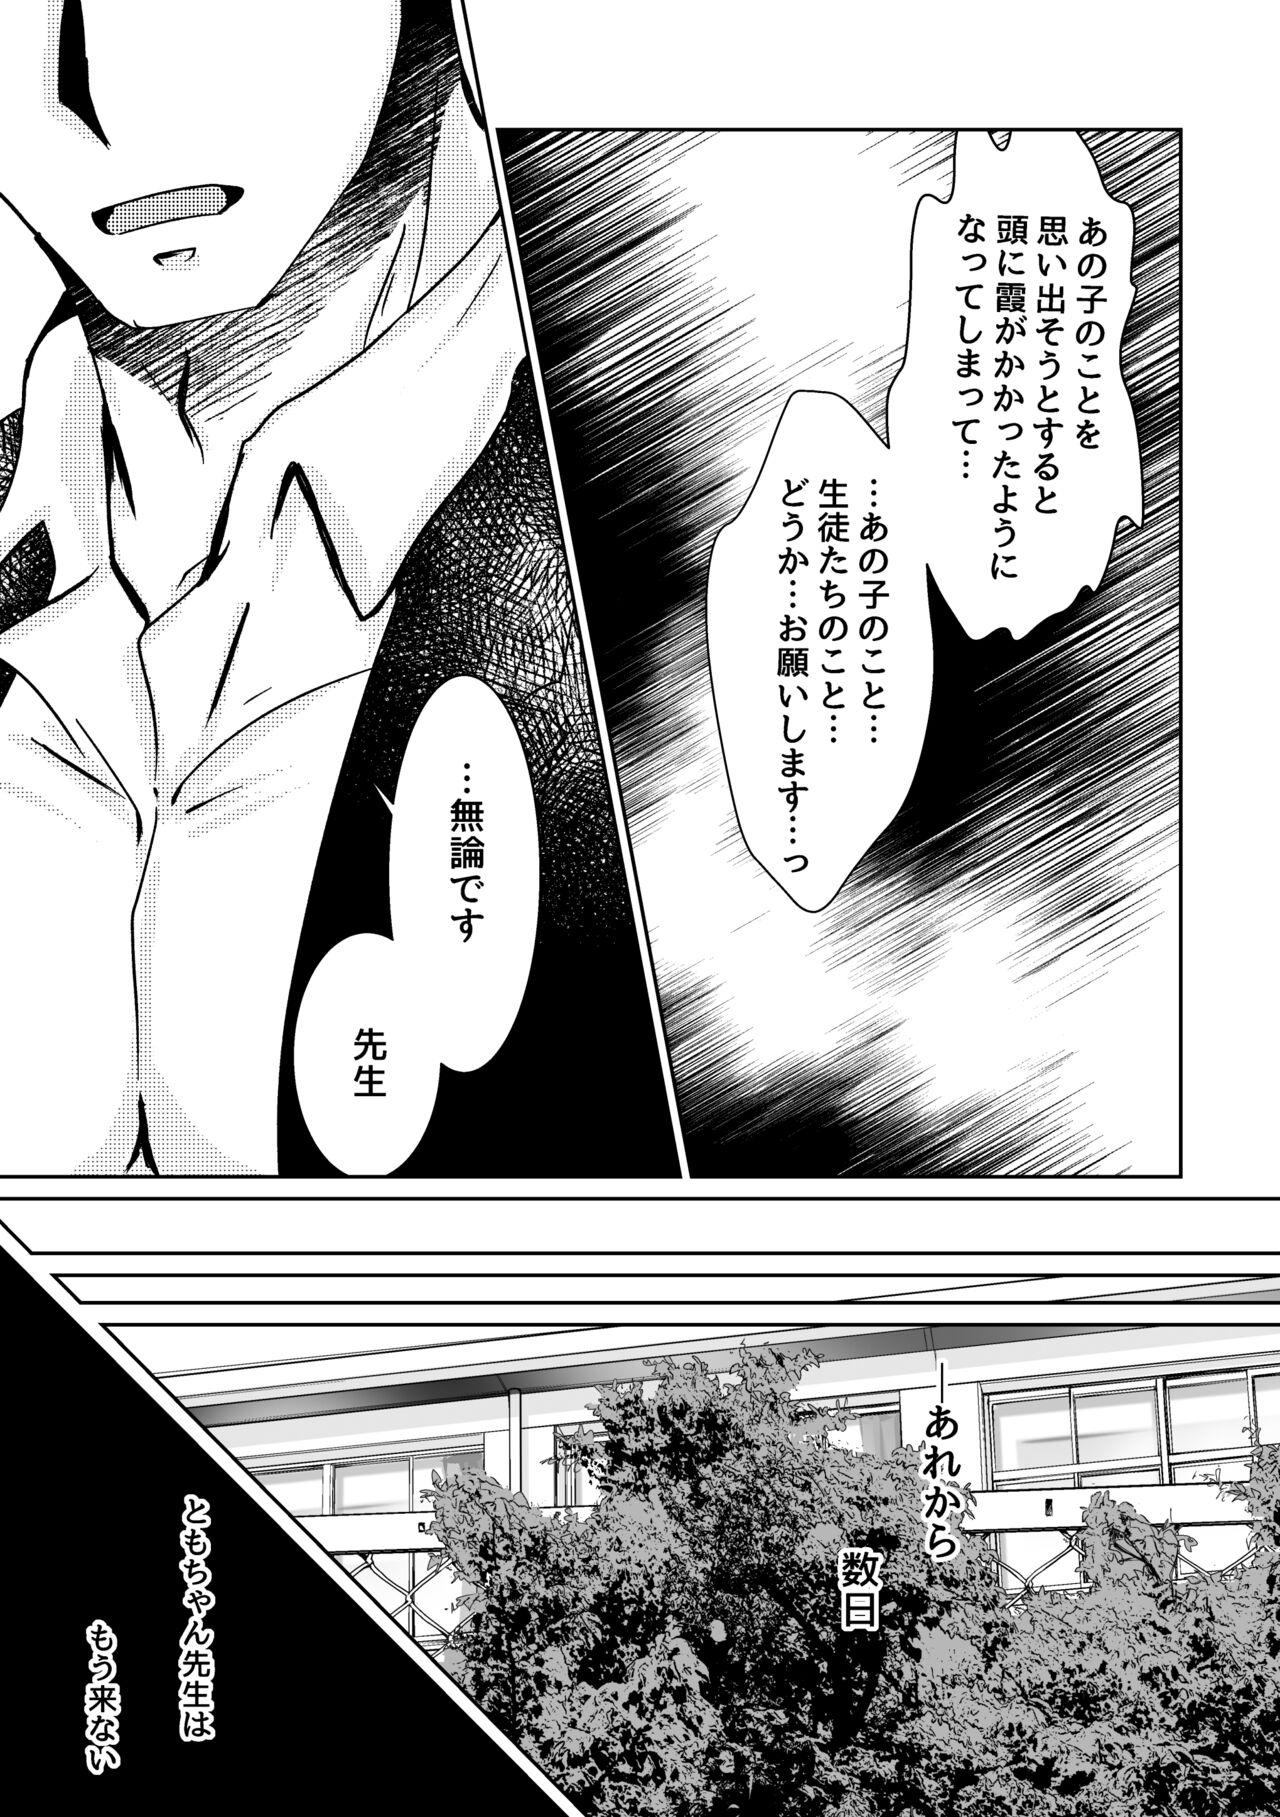 Fisting Kareya Yoru no Hanaka Episode 3 Tranny - Page 3